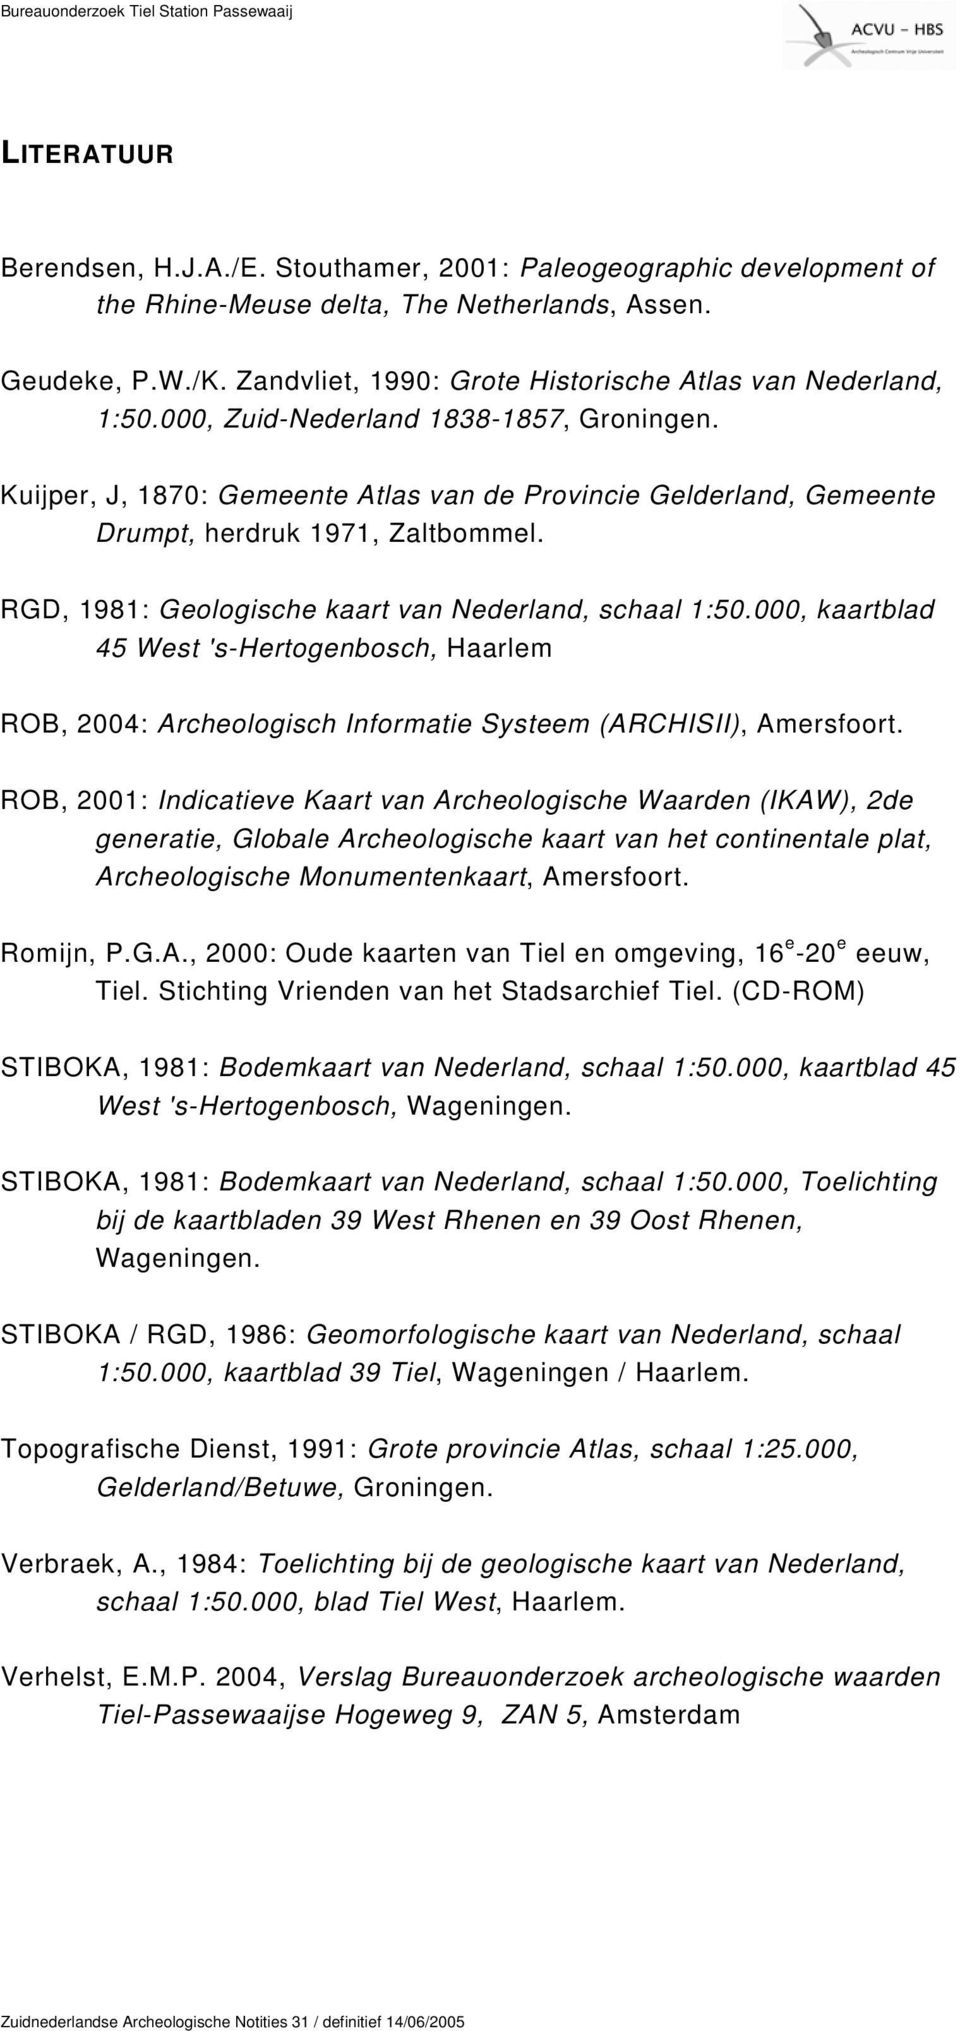 Kuijper, J, 1870: Gemeente Atlas van de Provincie Gelderland, Gemeente Drumpt, herdruk 1971, Zaltbommel. RGD, 1981: Geologische kaart van Nederland, schaal 1:50.